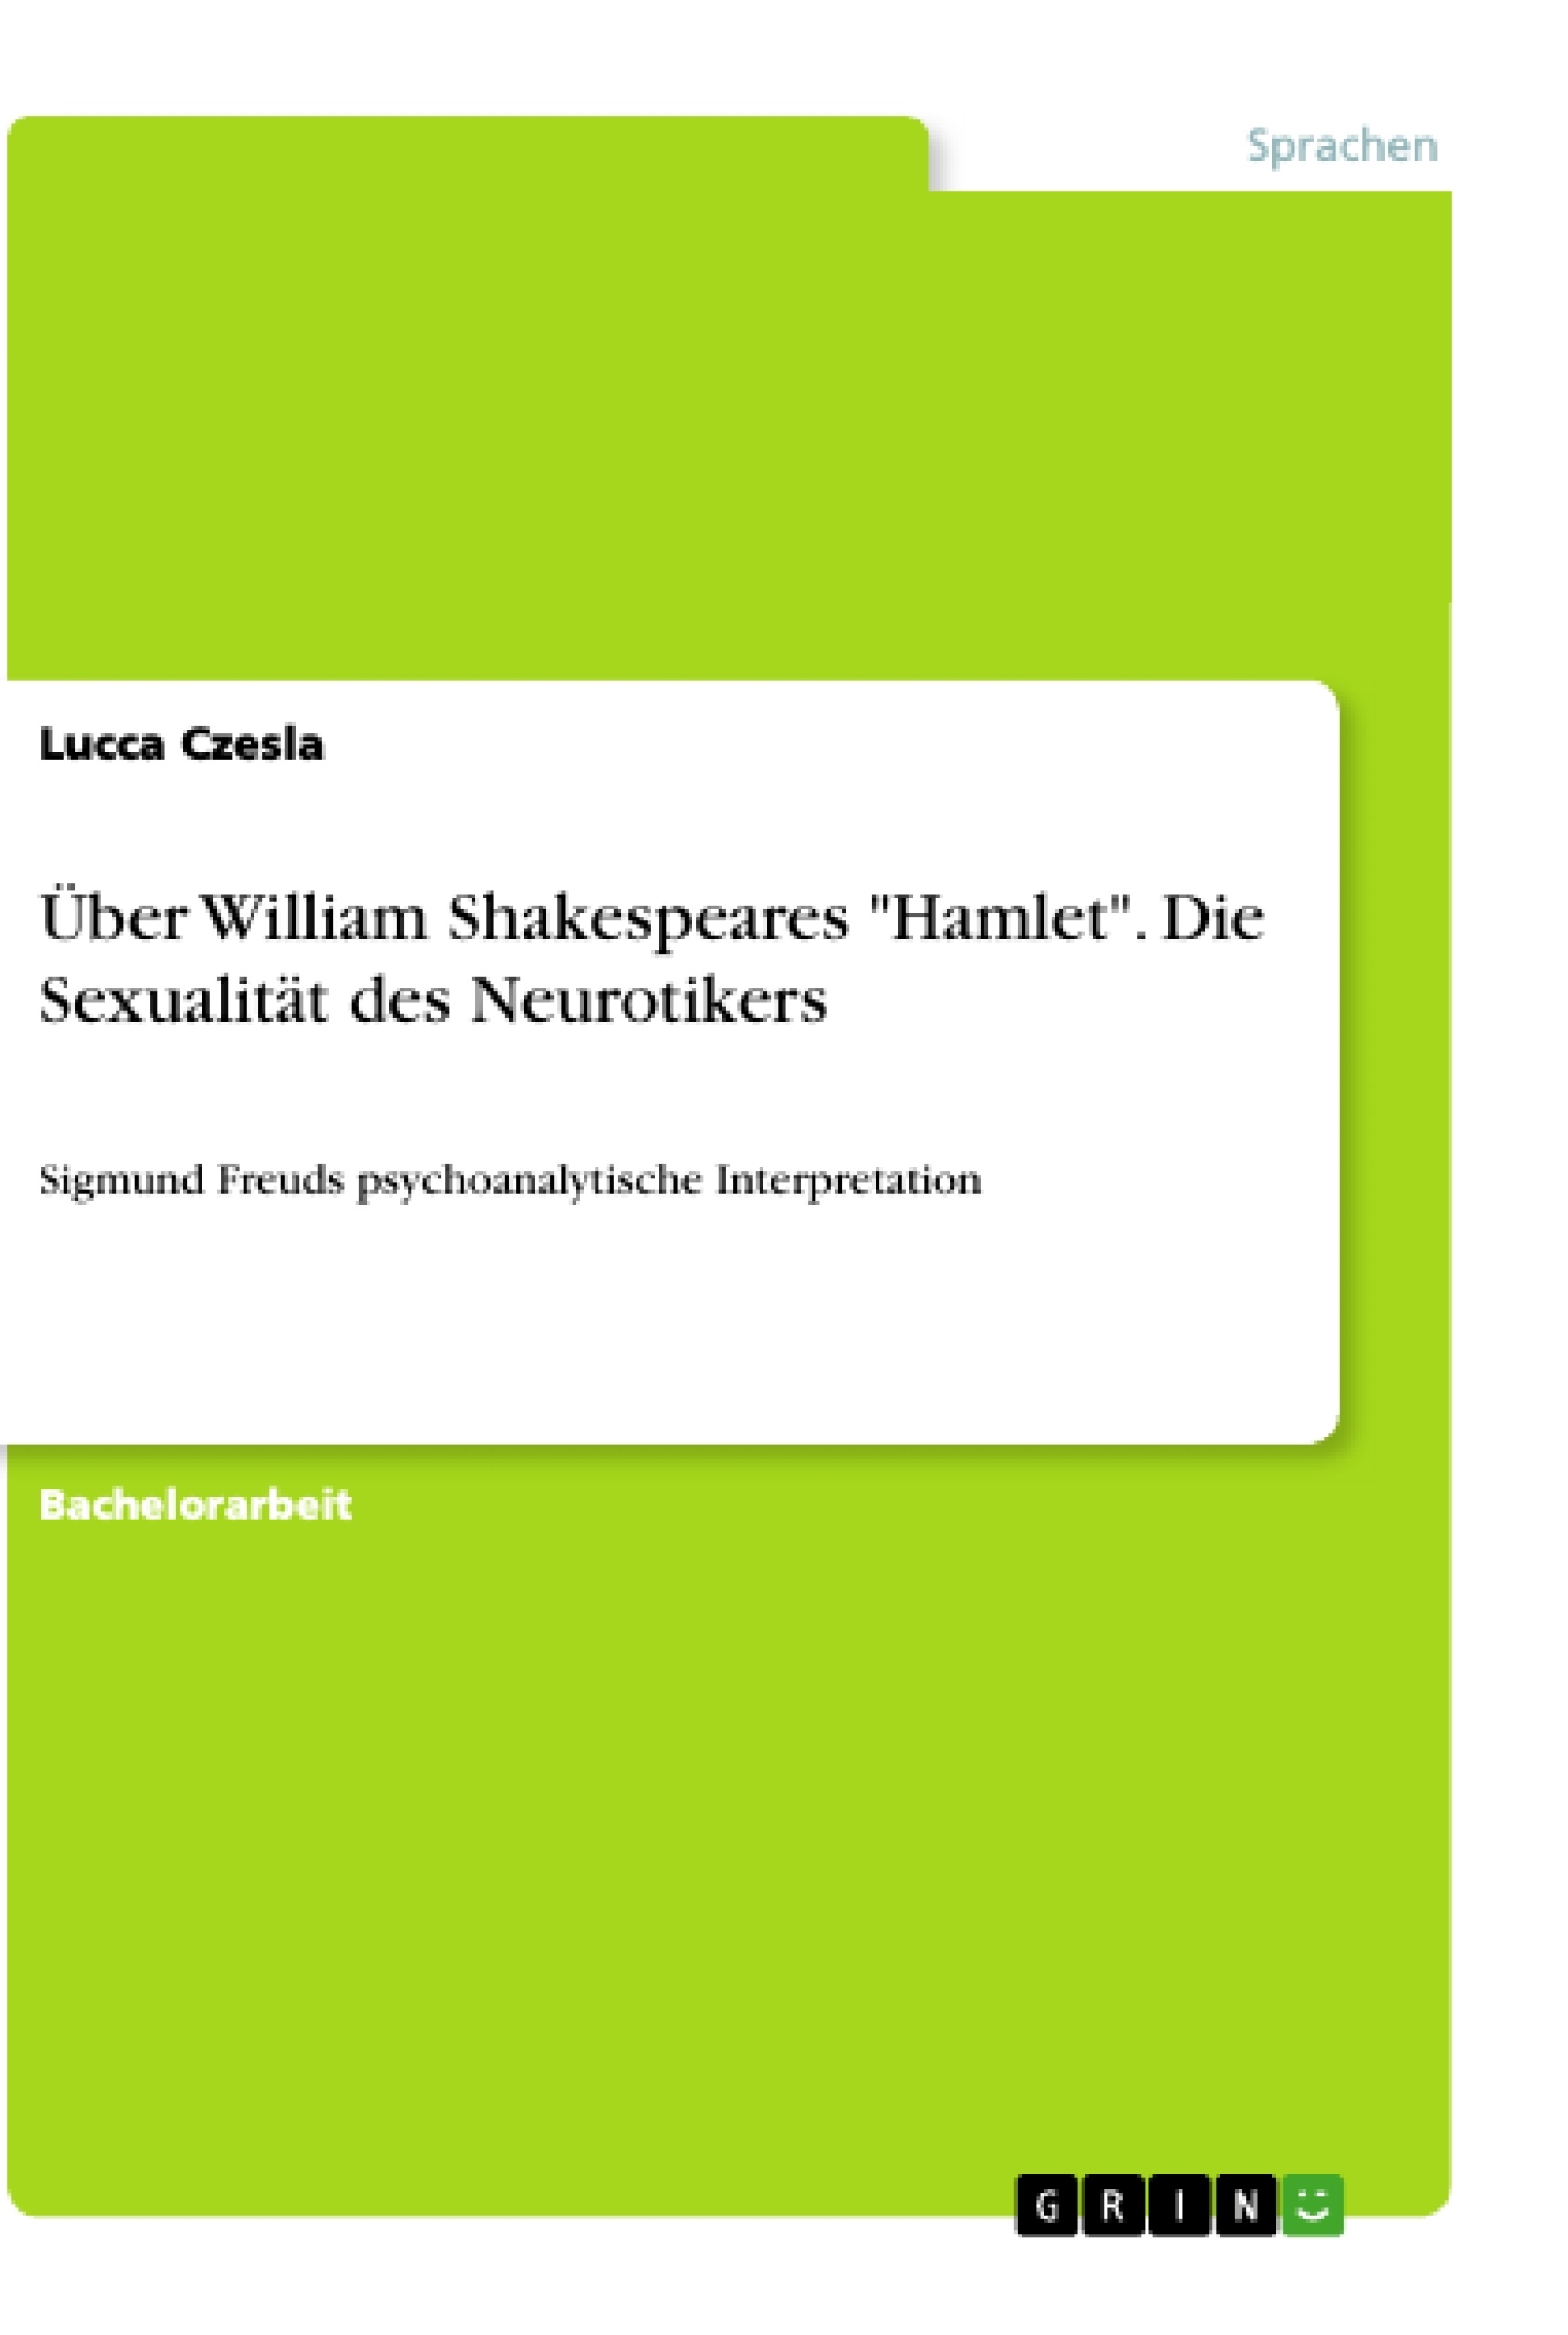 Titel: Über William Shakespeares "Hamlet". Die Sexualität des Neurotikers